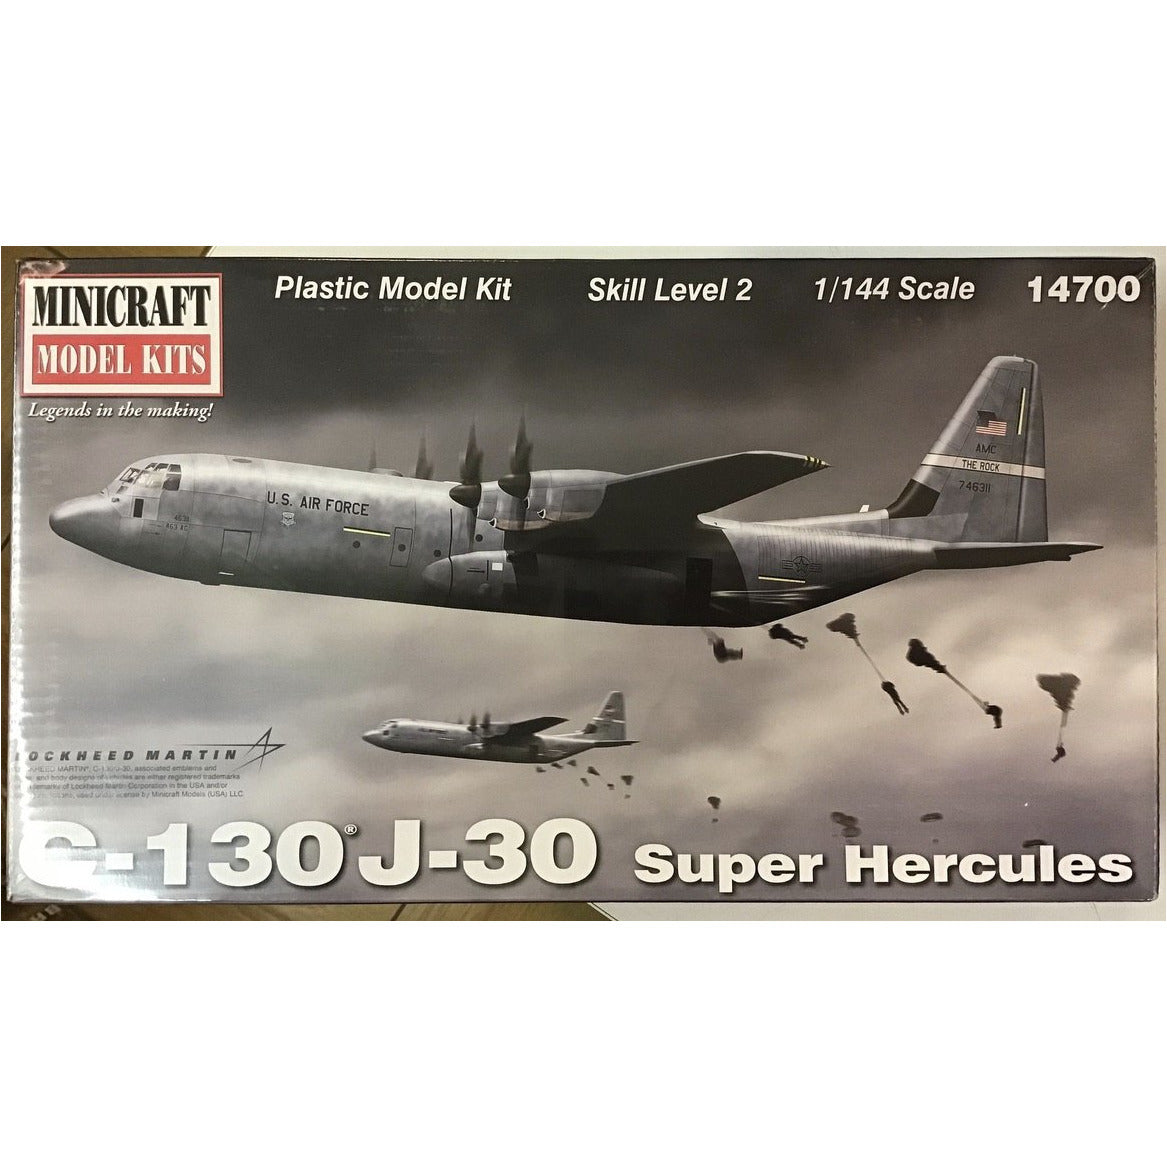 C-130J-30 Super Hercules 1/144 by Minicraft